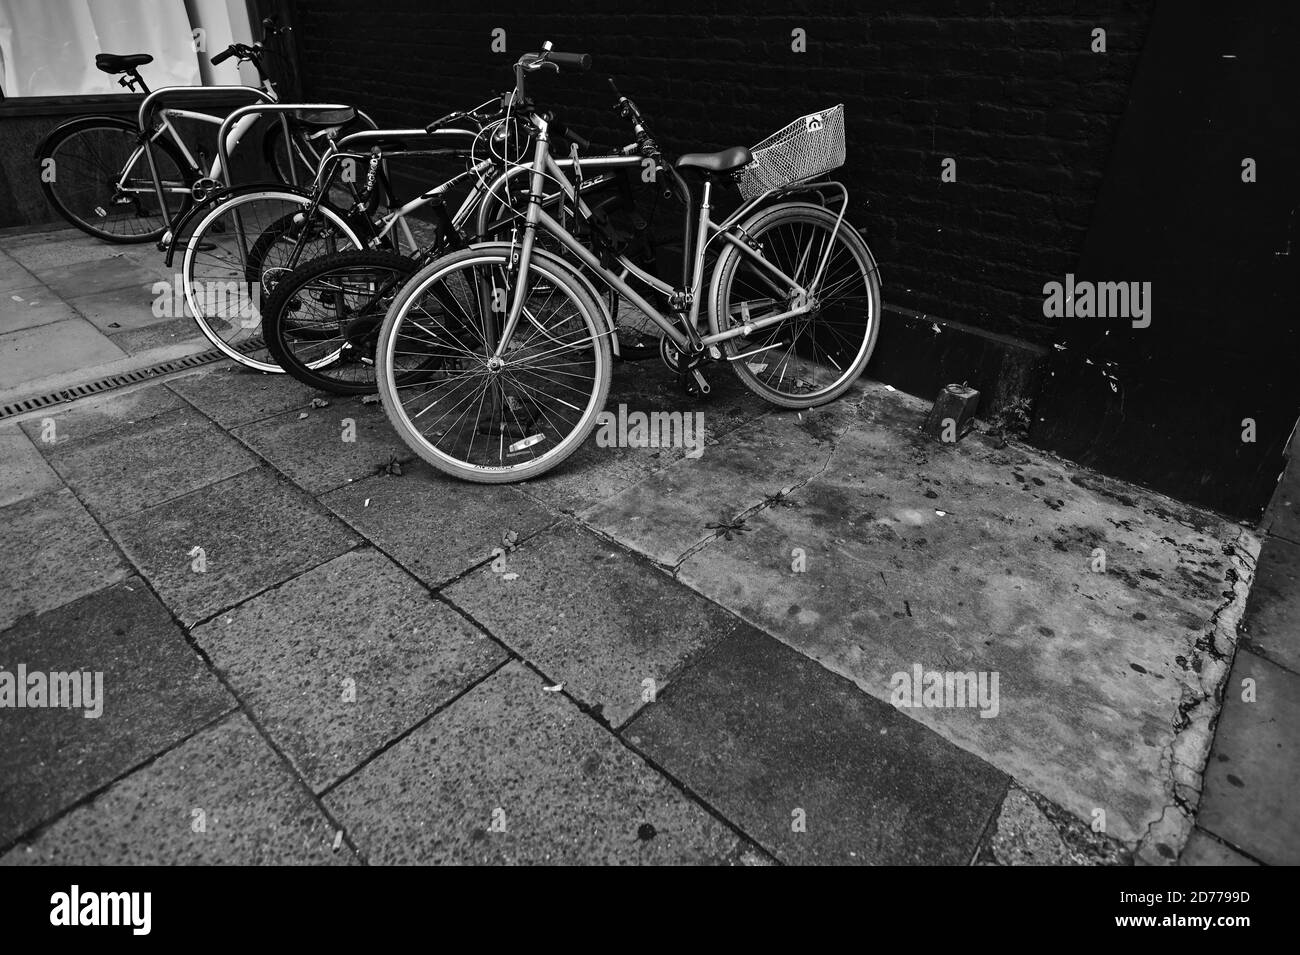 Noir et blanc, monochrome, vue de cinq vélos inclinés enfermés sur une chaussée ou un trottoir. Banque D'Images